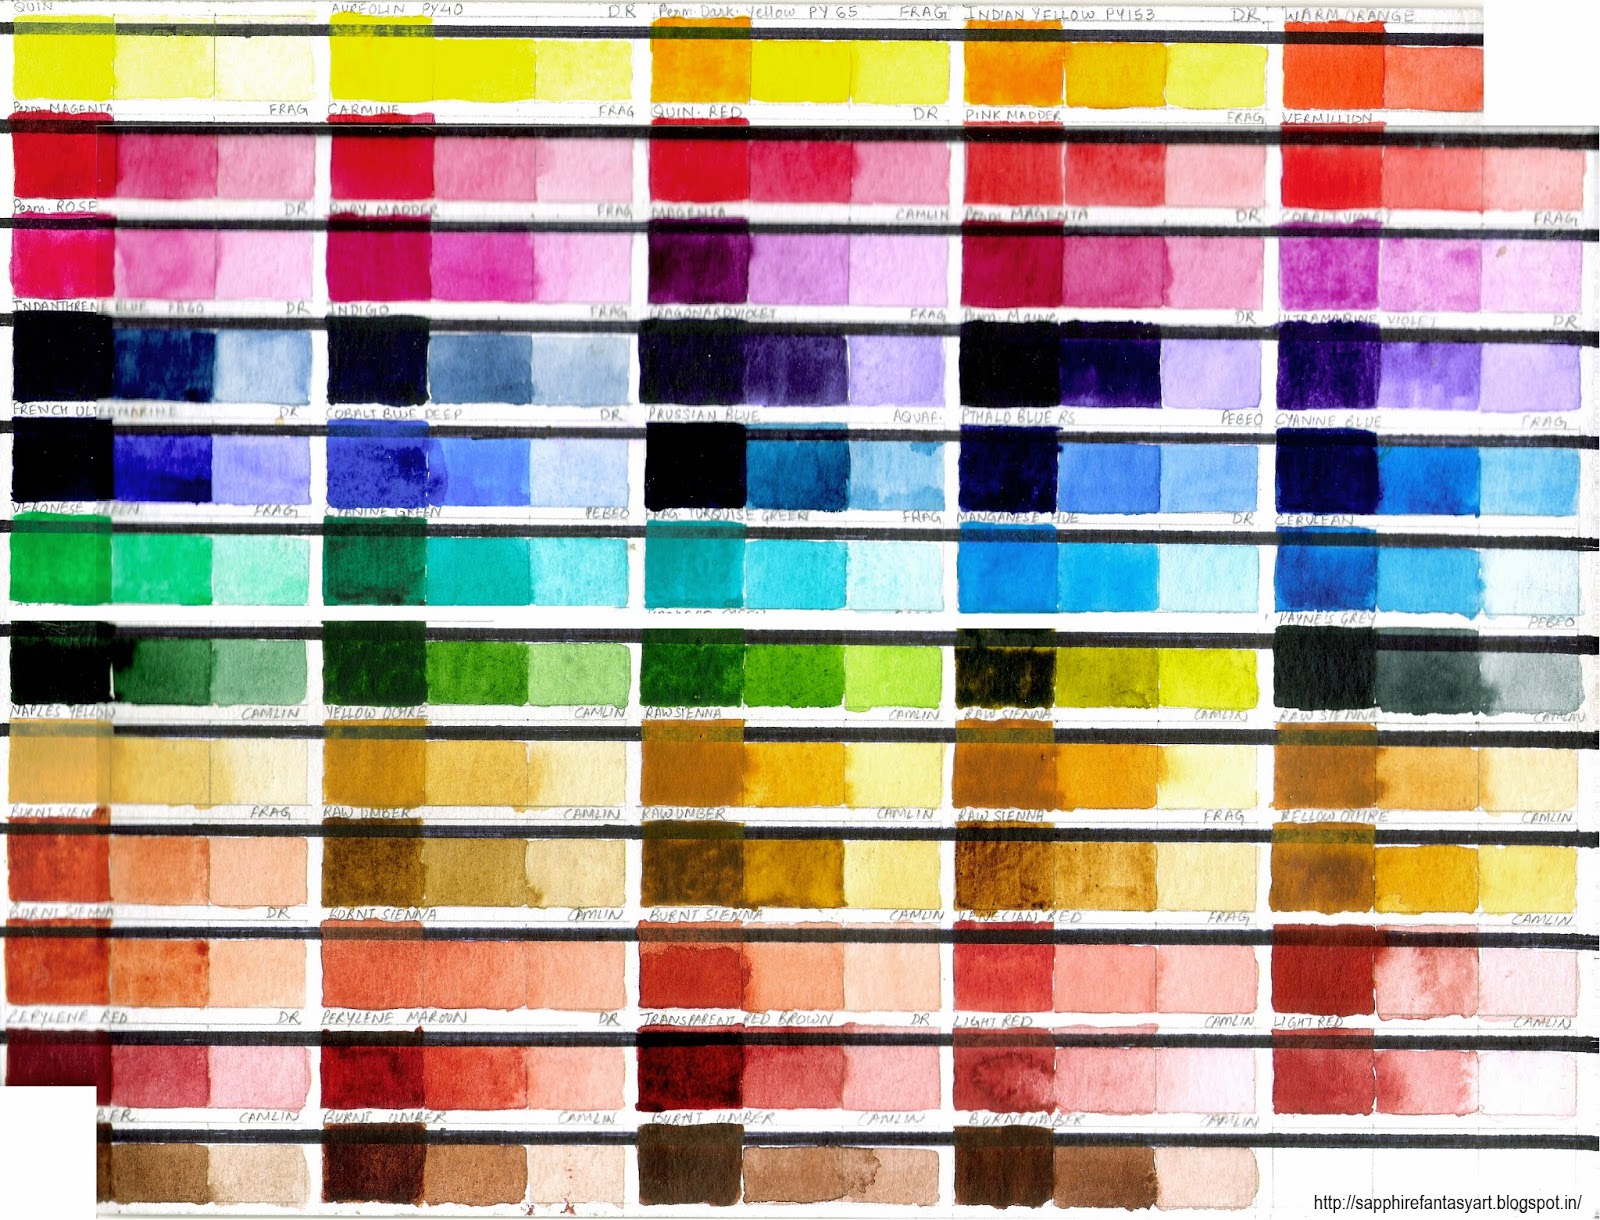 Pebeo Oil Paint Color Chart